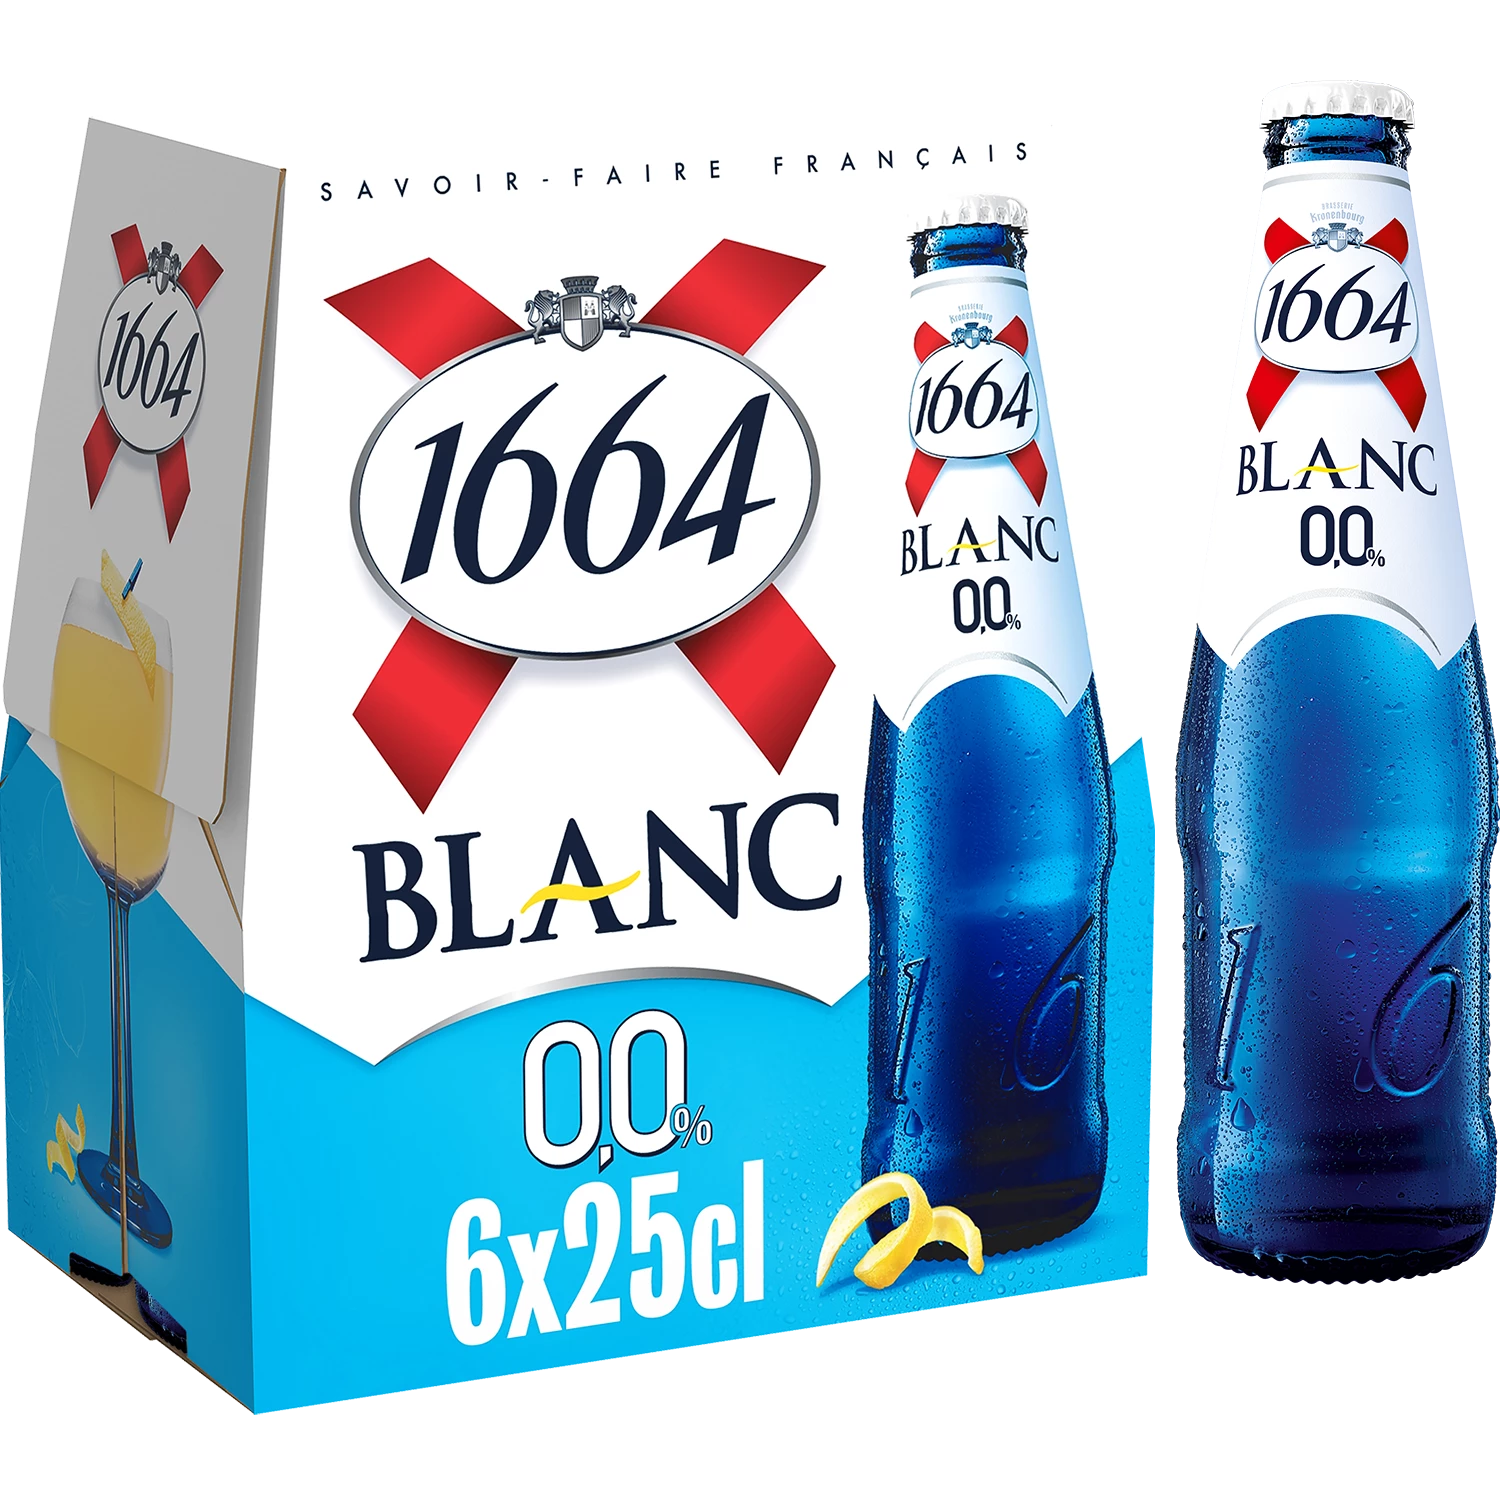 Безалкогольное белое пиво - 1664